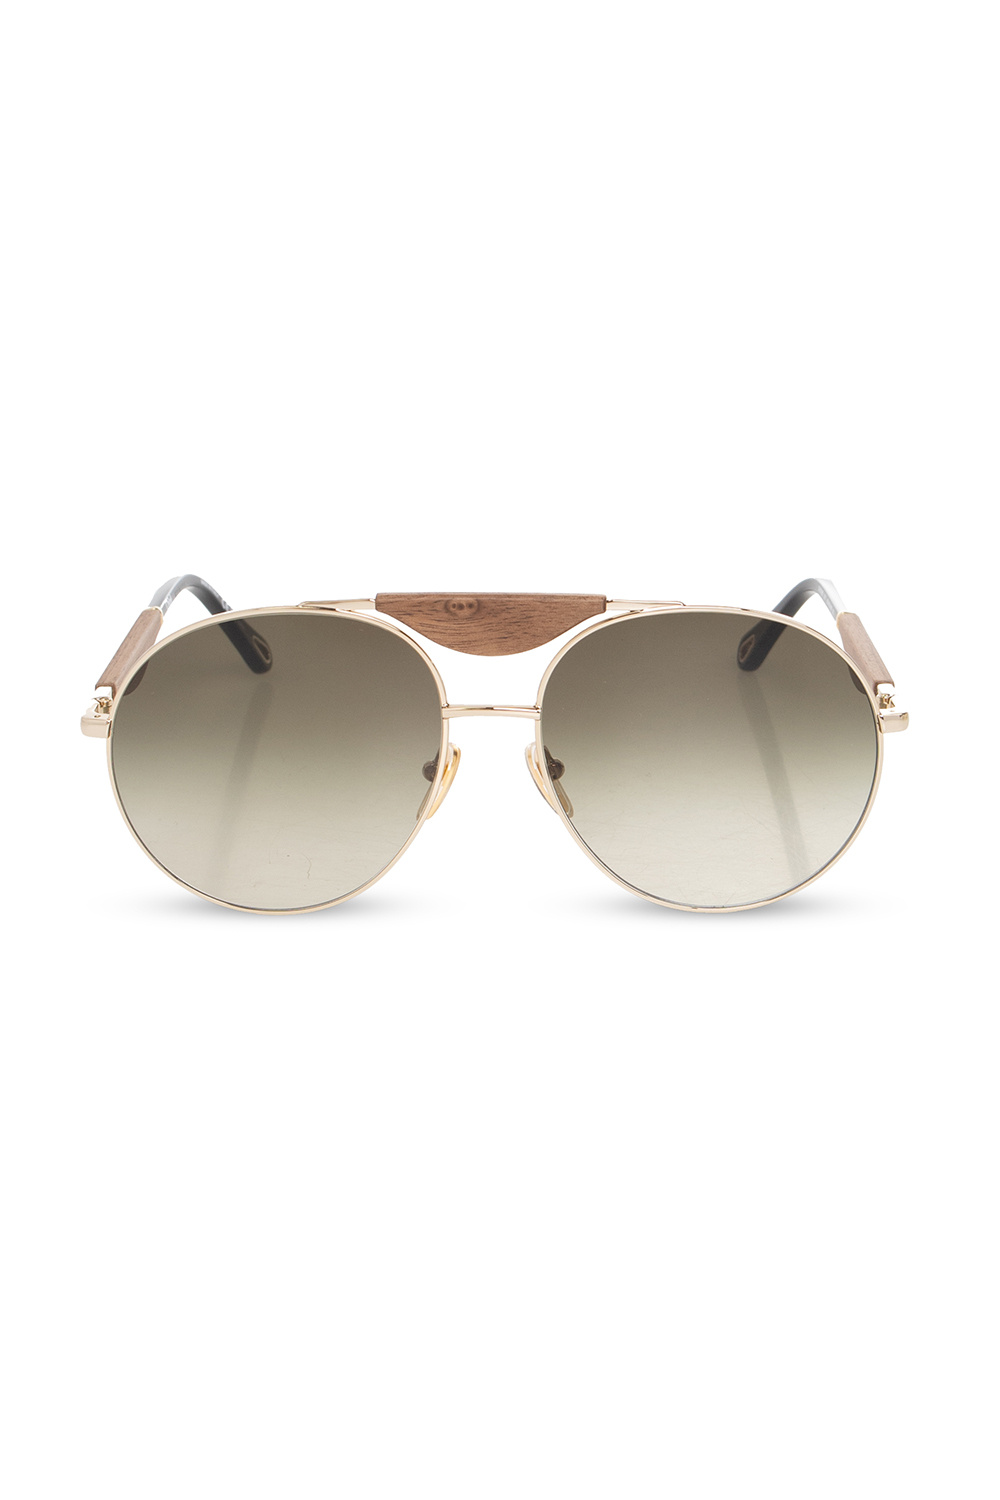 Chloé ‘Melia’ sunglasses